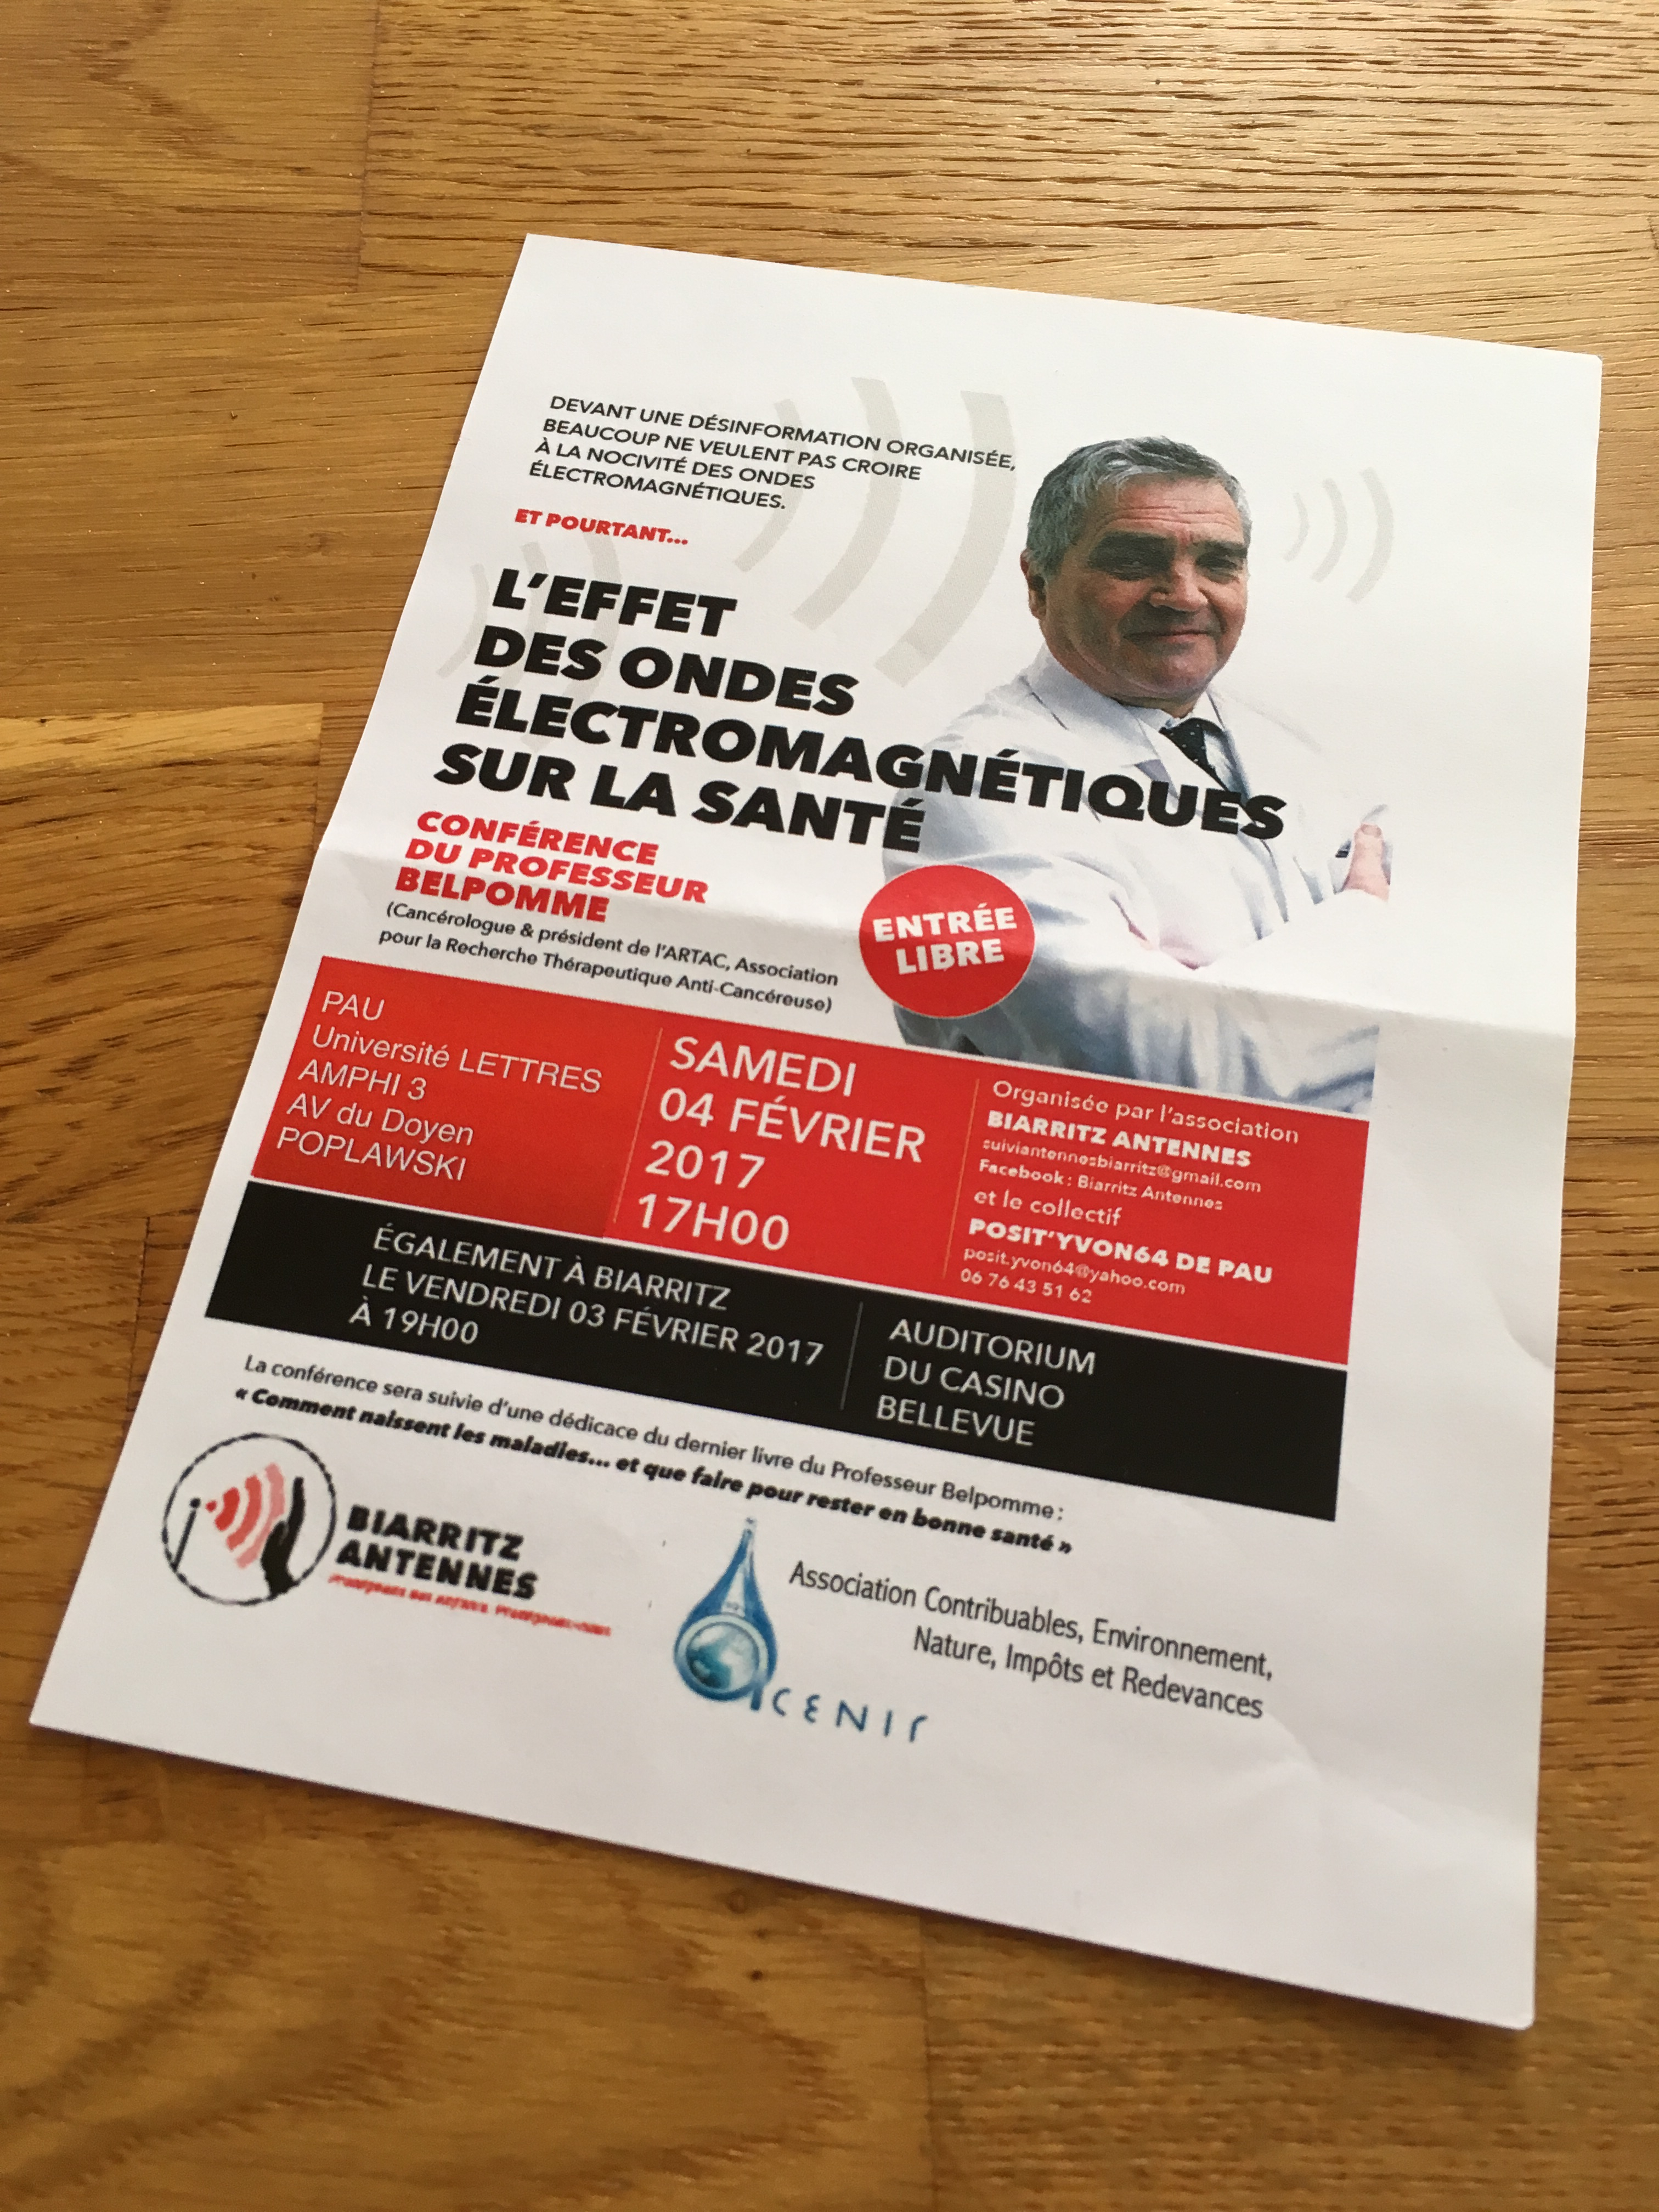 Téléphones portable et électro-hypersensibilité - Conférence du Professeur Belpomme dans les Pyrénées Atlantiques